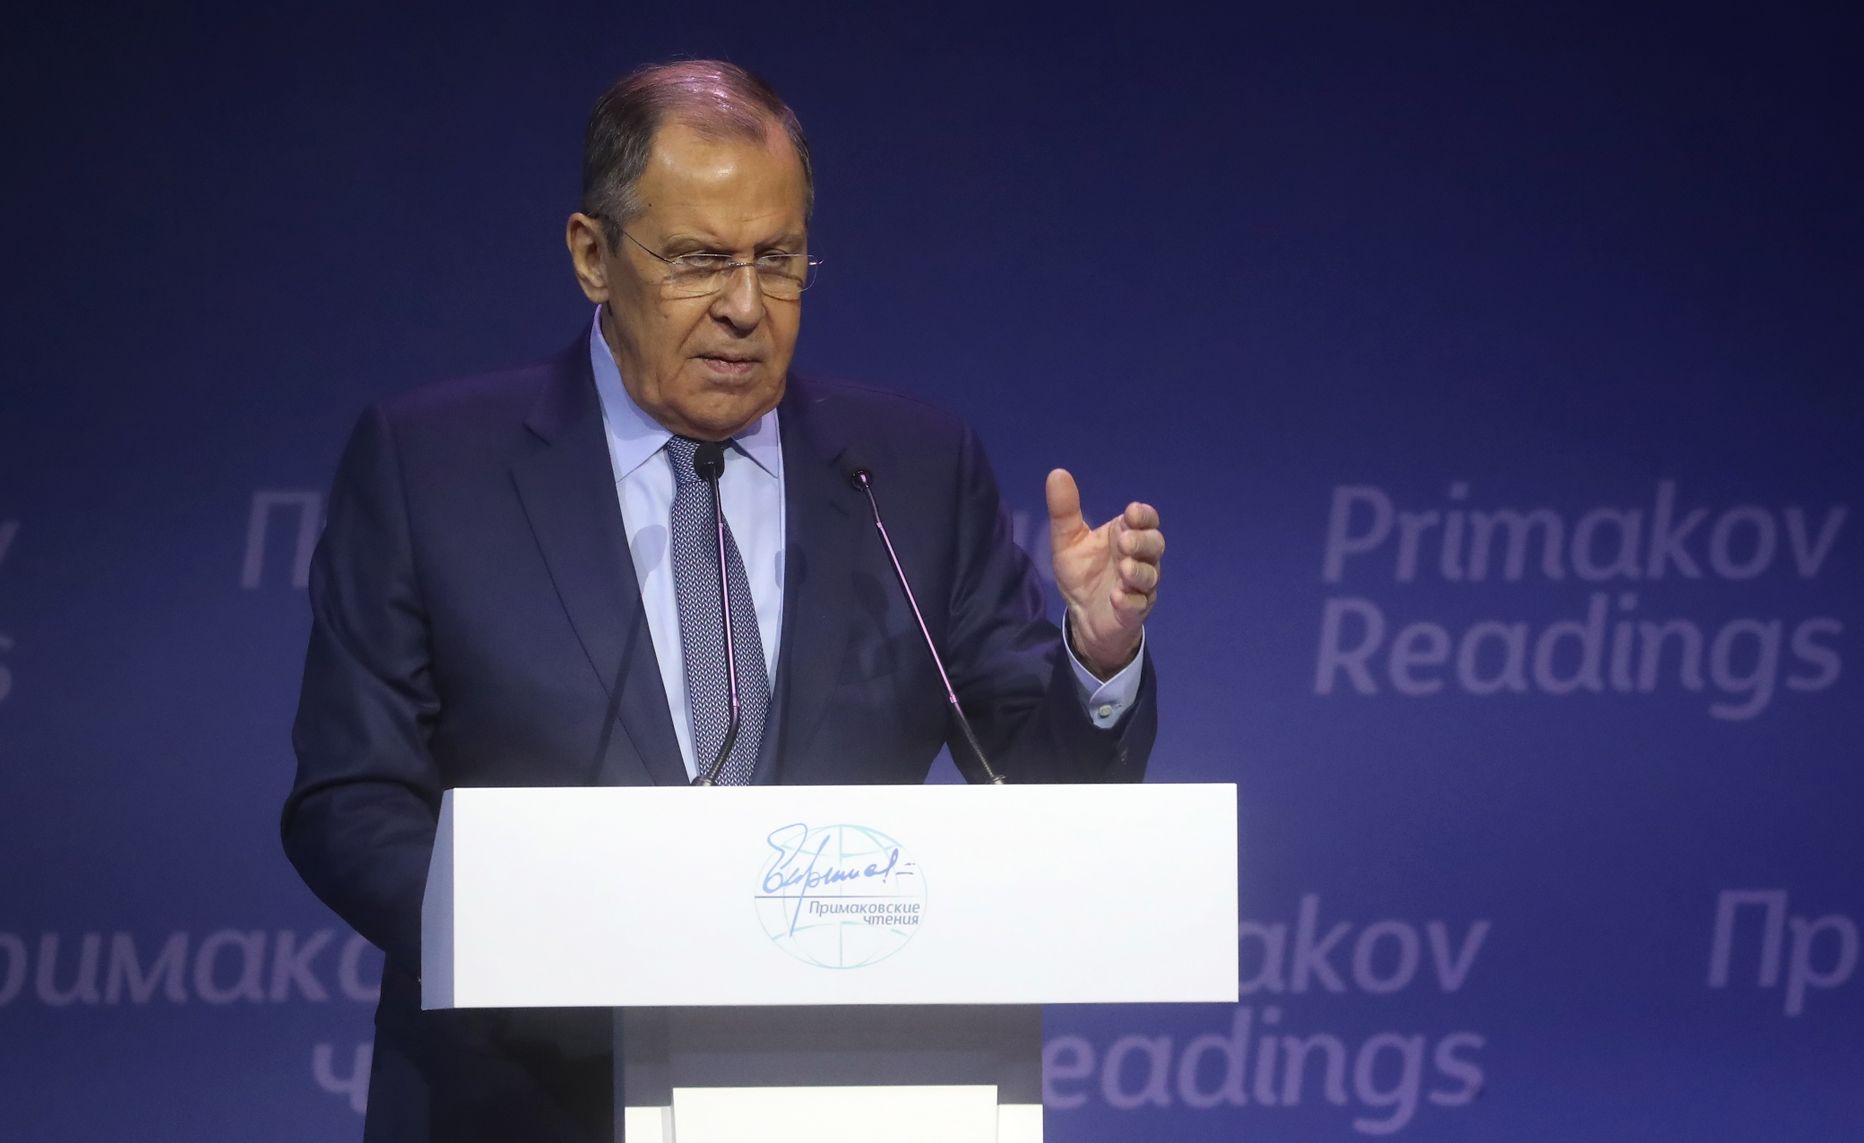 Venemaa välisminister Sergei Lavrov kõneles 7. detsembril 2022 Moskvas toimunud majandusfoorumil Primakov Readings International Forum, kus ta rääkis ka, kuidas ta Rootsis WCs  käis